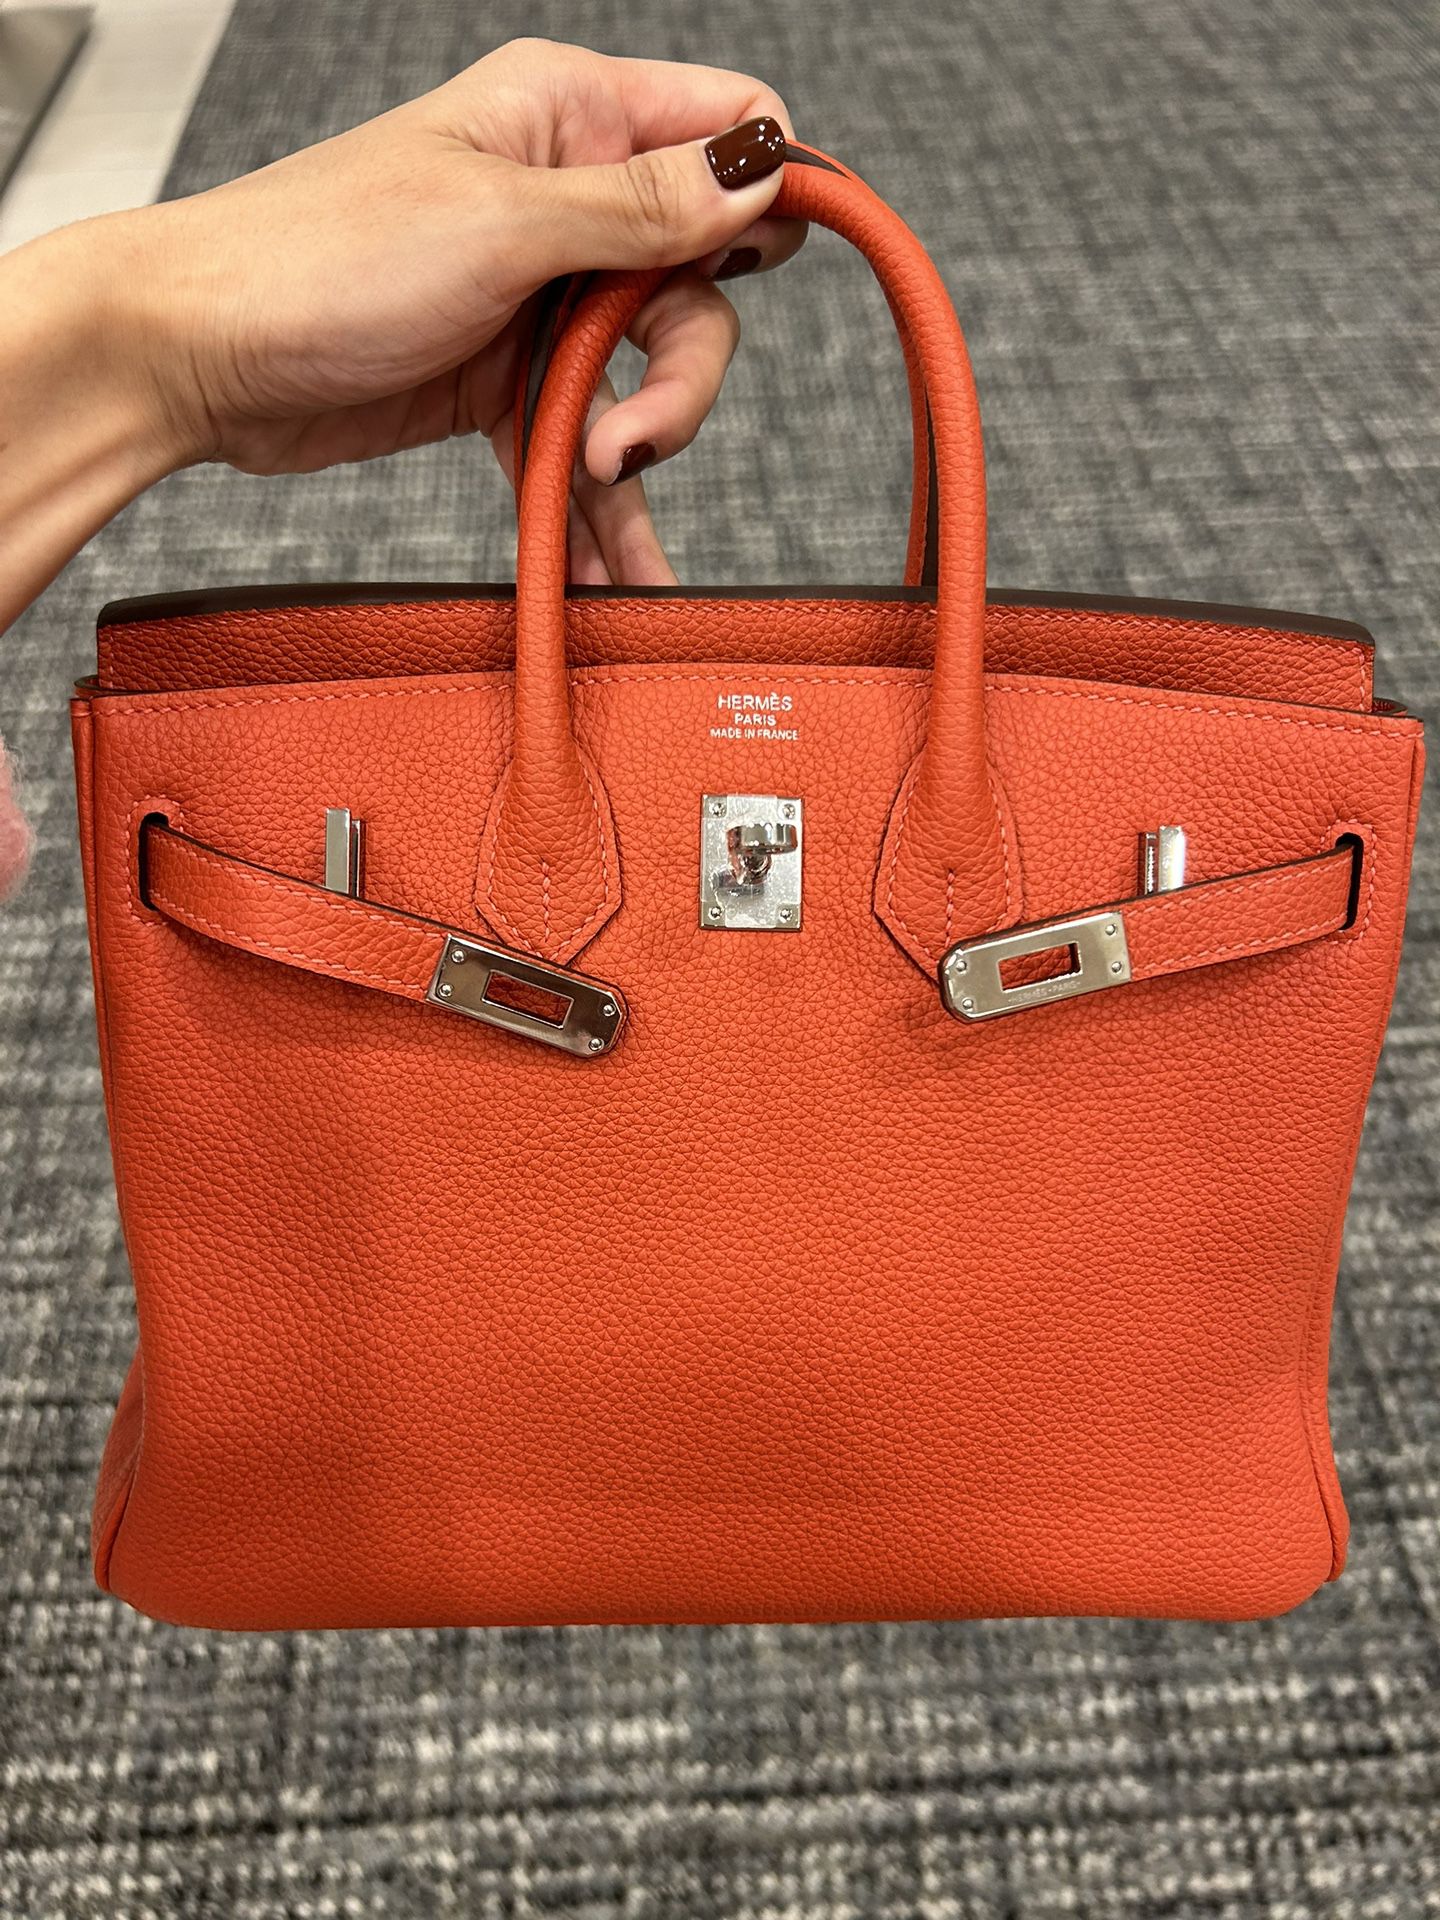 Hermes Birkin Bag 25 Size Red Color 